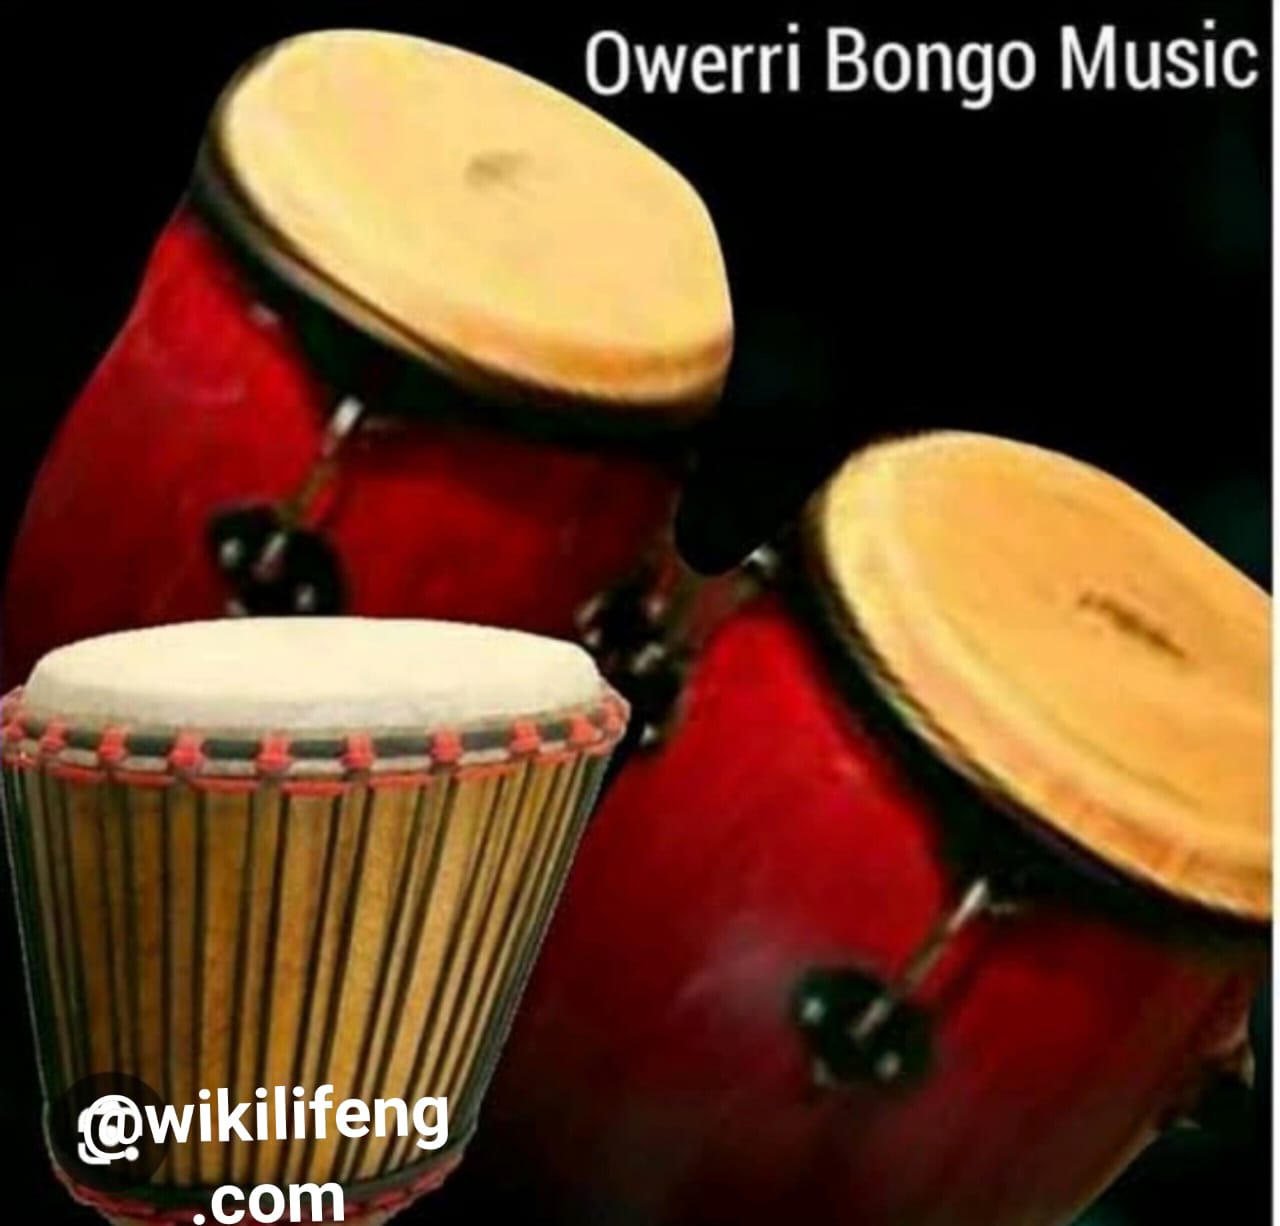 Owerri Bongo